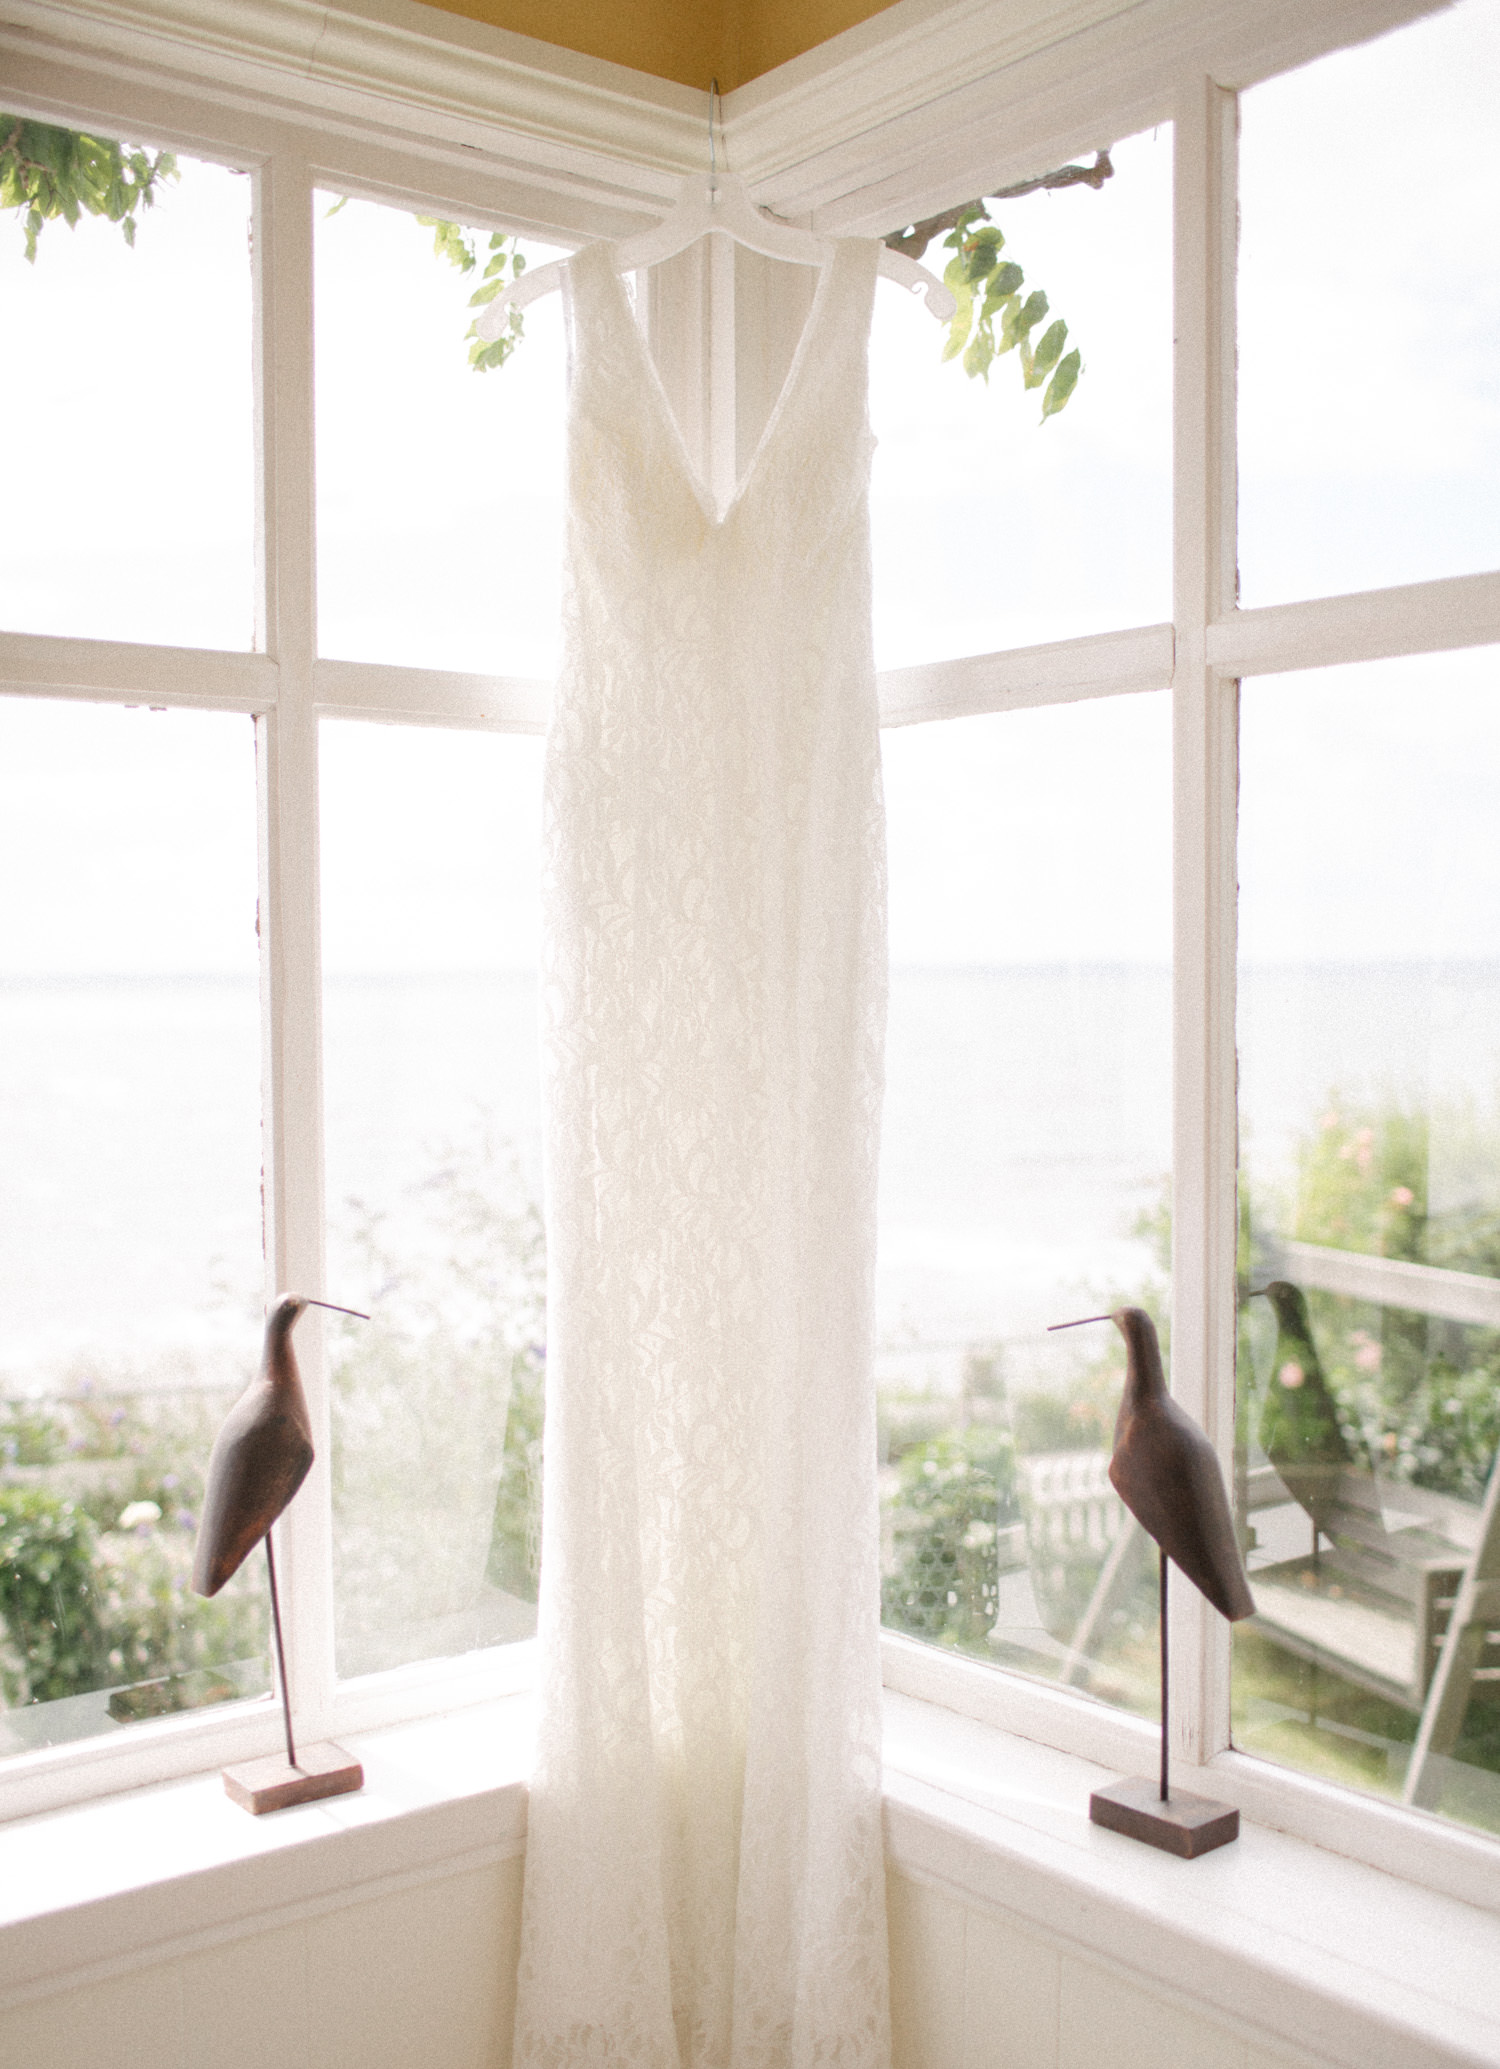 Bild i färg på brudklänning upphängd i fönster under ett bröllop på Ven. Bröllopsfotograf är Tove Lundquist.